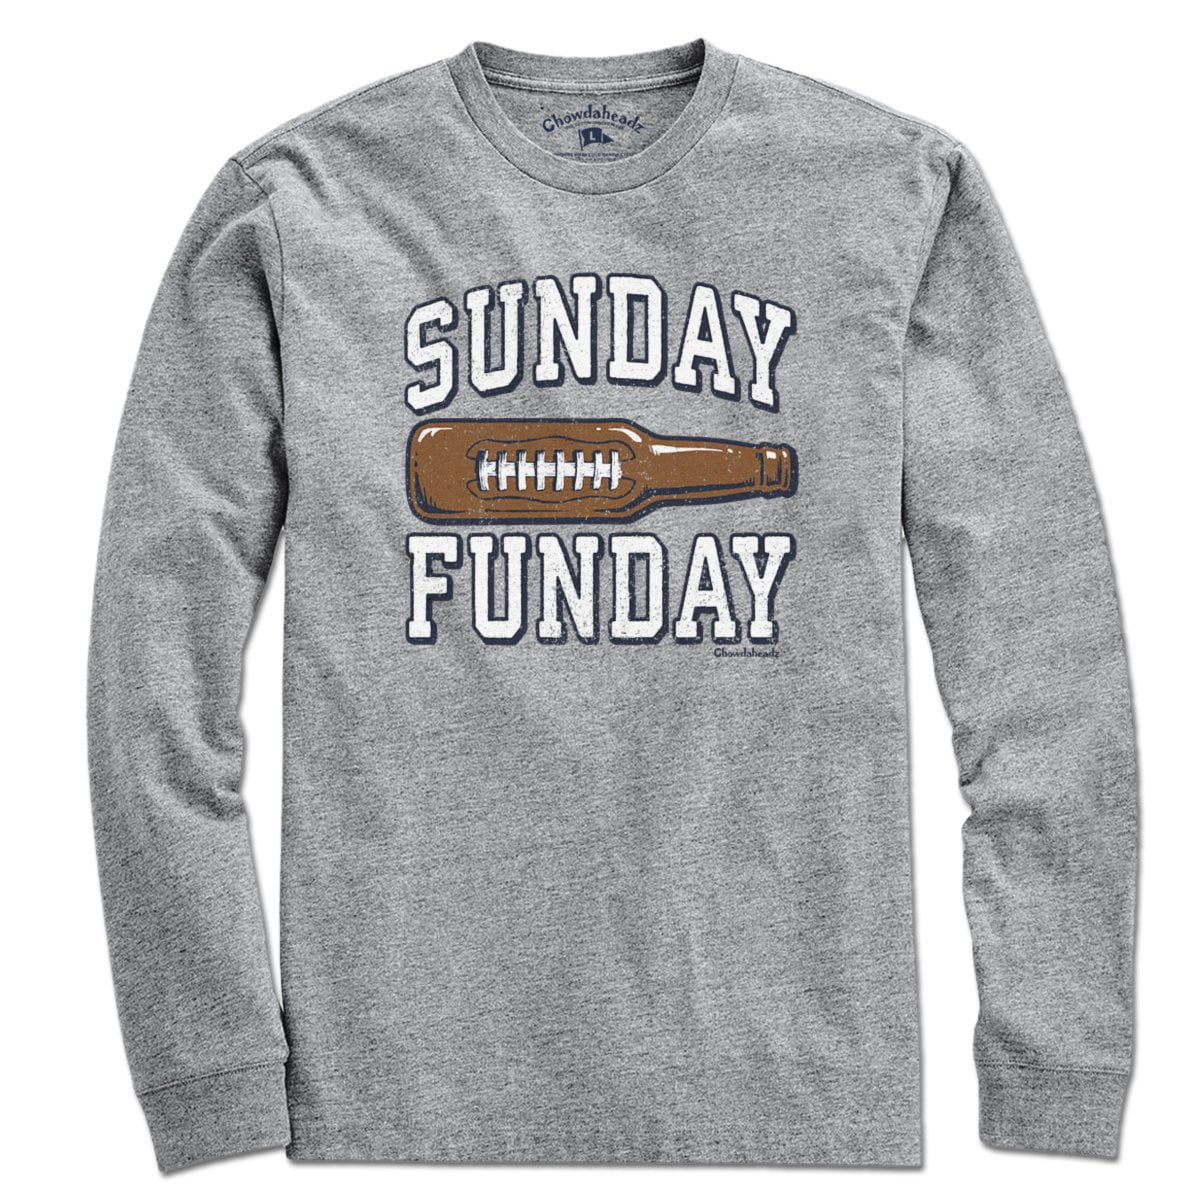 Sunday Funday Footbottle T-Shirt - Chowdaheadz